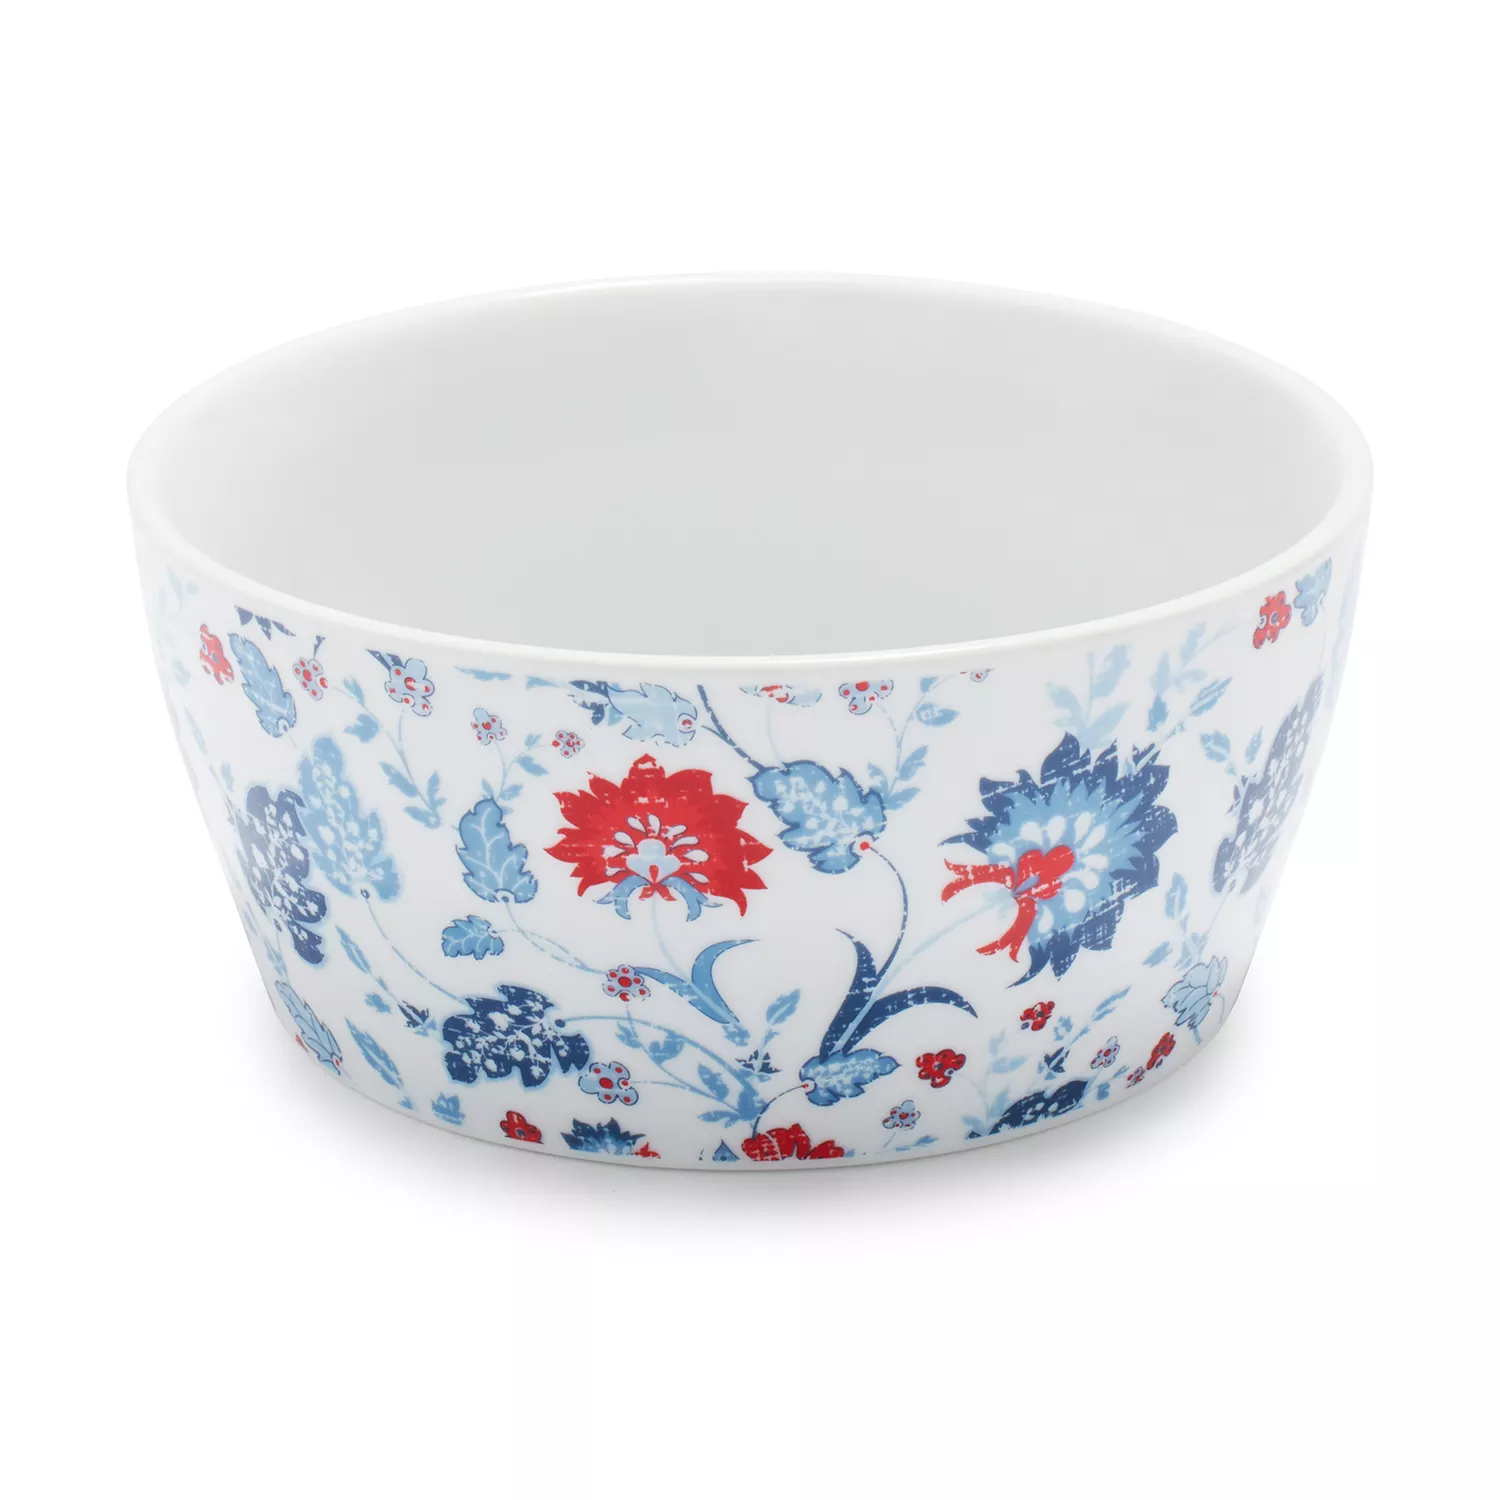 Sur La Table Pique-nique Floral Porcelain Bowls, Set of 4